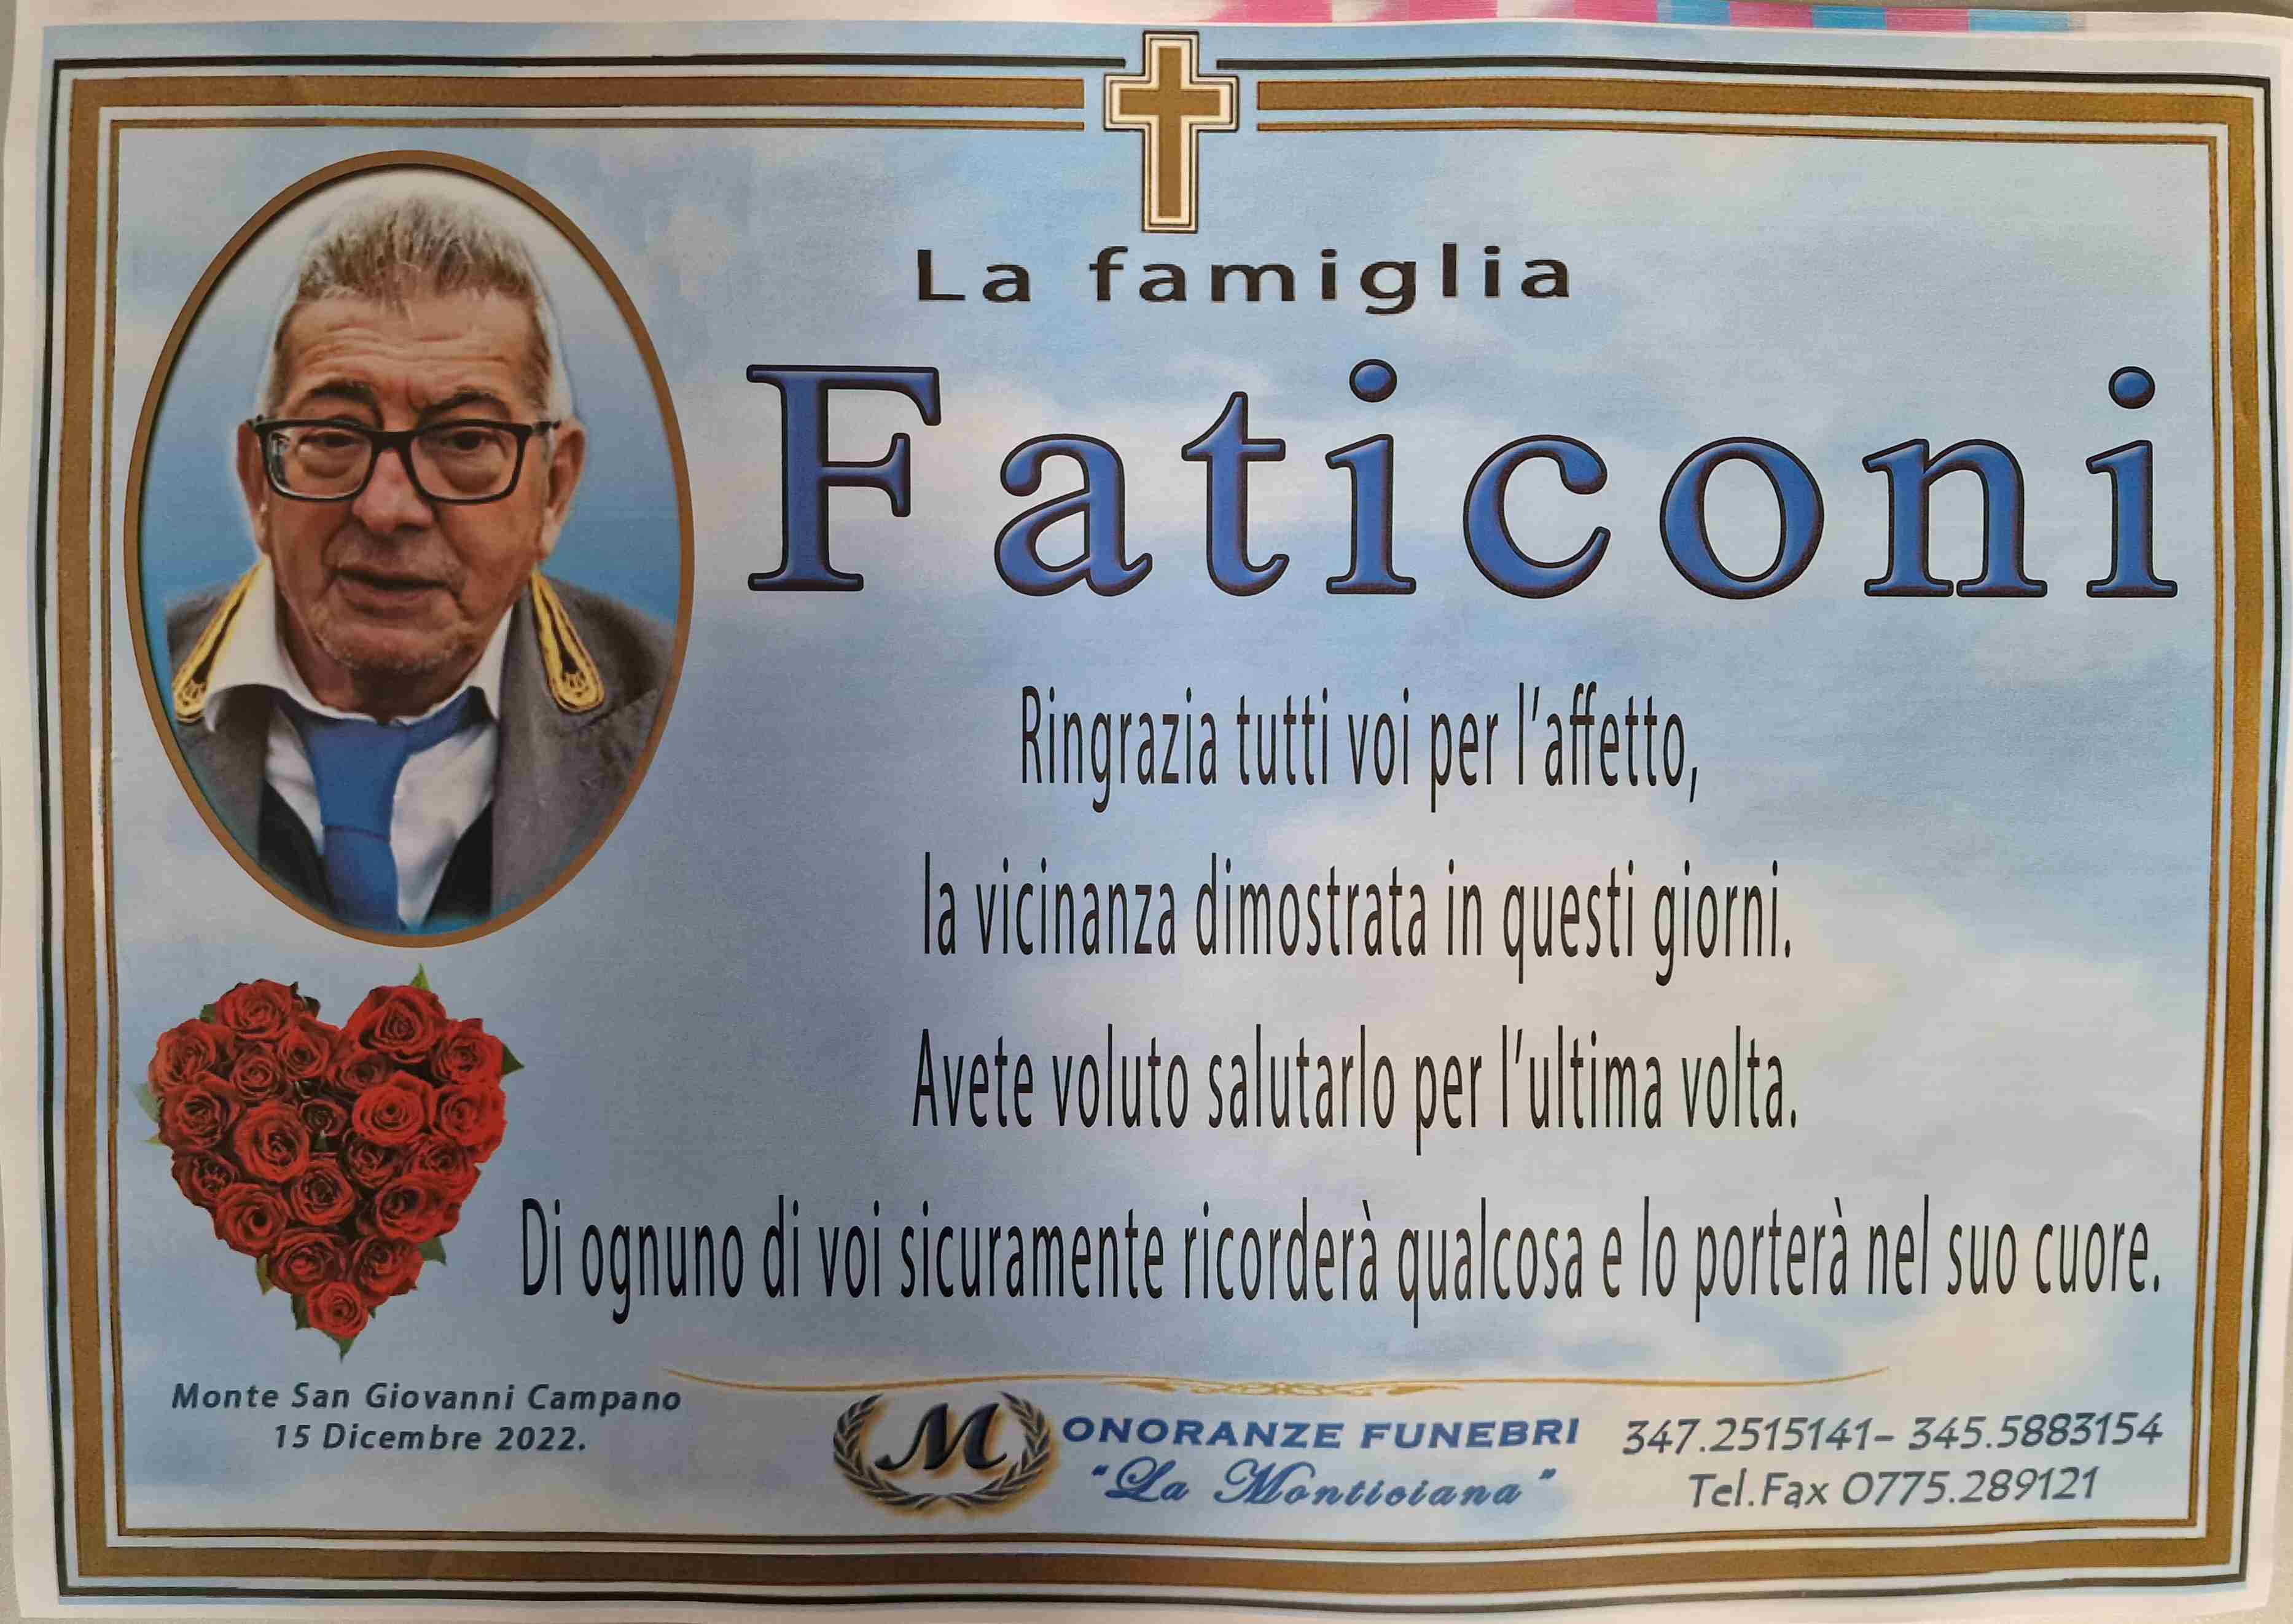 Rocco Faticoni